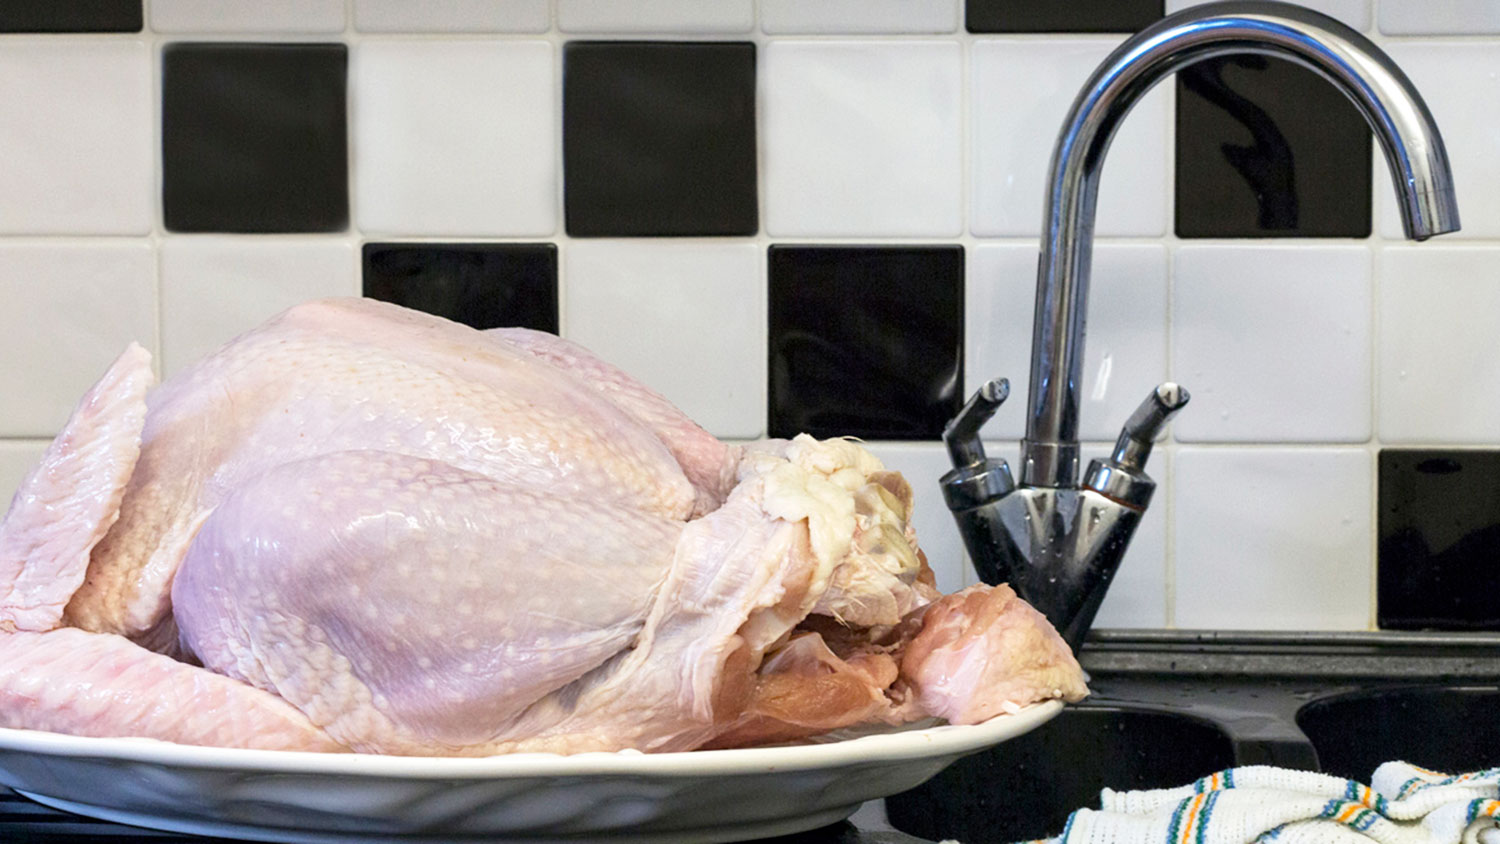 A raw turkey near a sink.